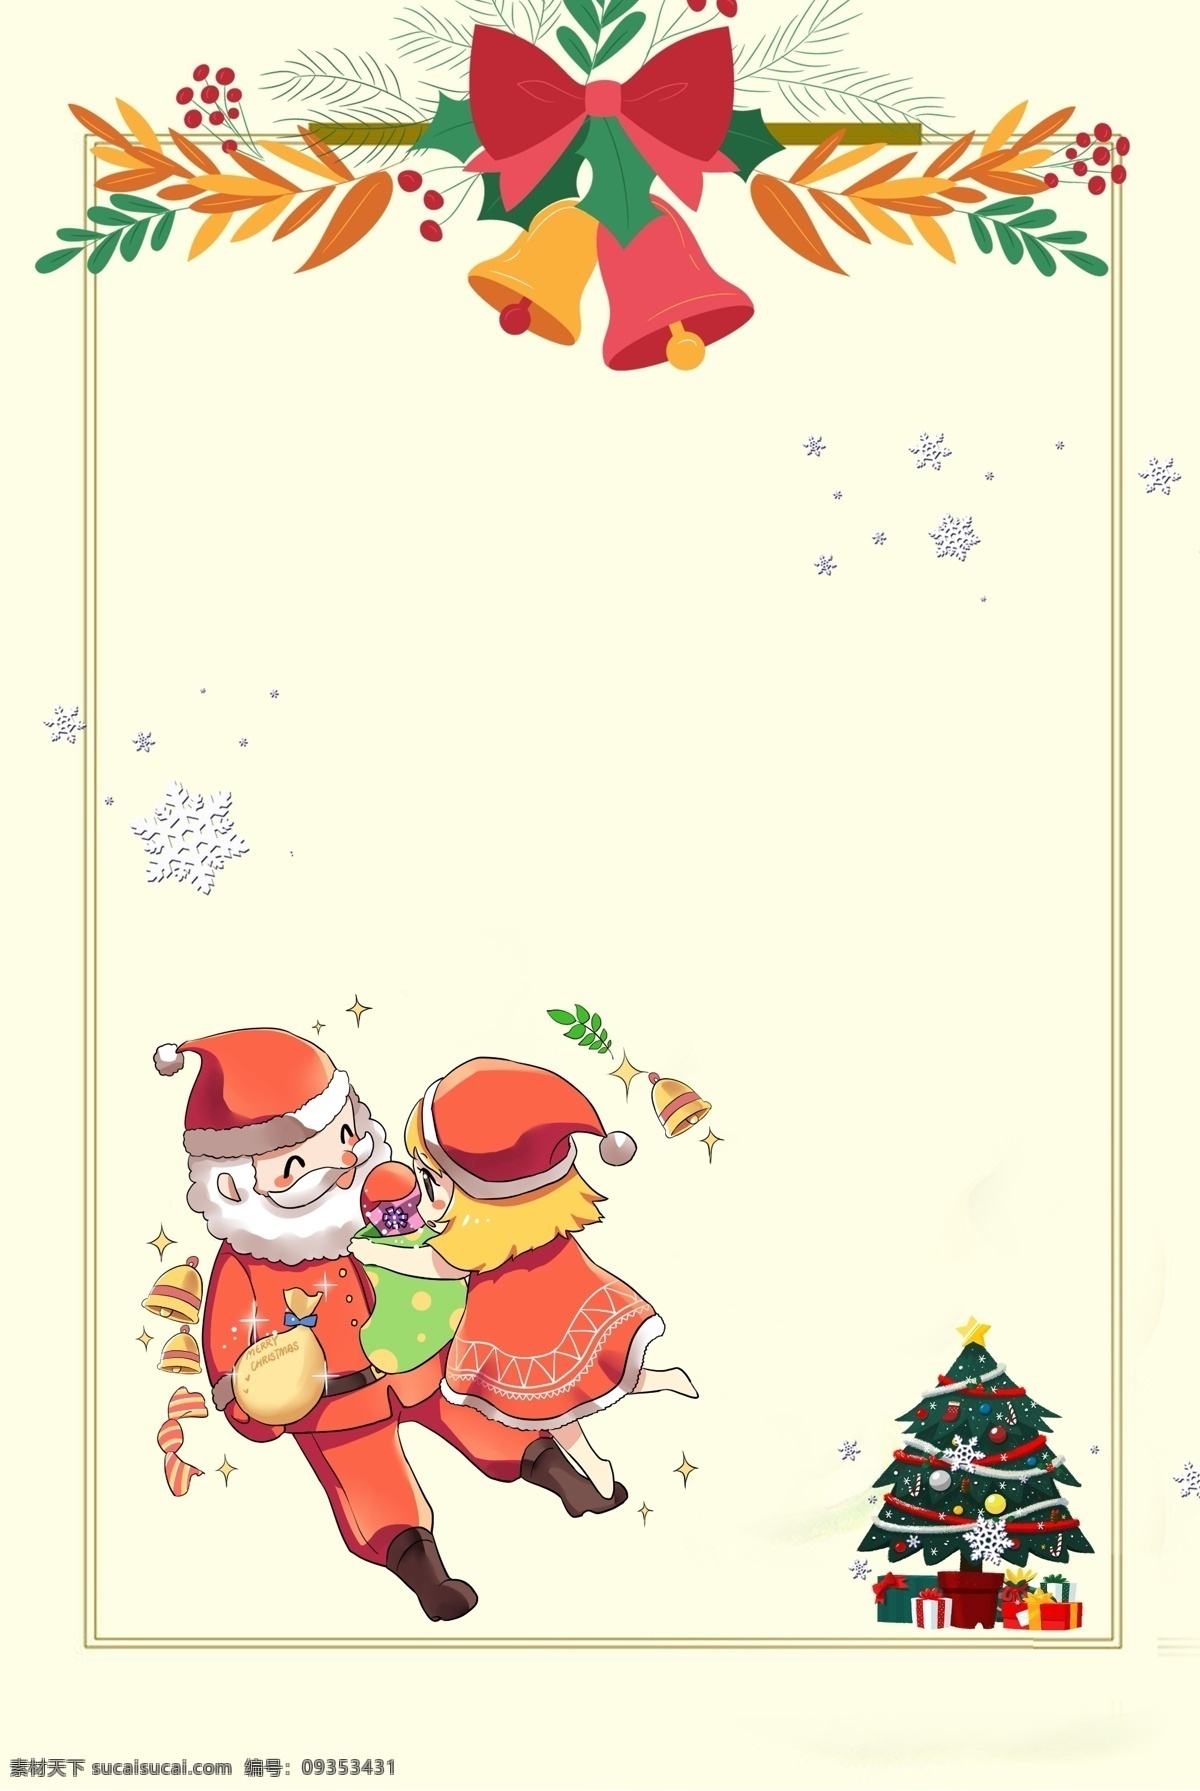 手绘 圣诞老人 送礼 物 背景 圣诞树 雪花 圣诞海报 背景设计 圣诞铃铛 圣诞装饰 圣诞礼物 松枝 圣诞展板 雪圣诞节海报 圣诞背景模板